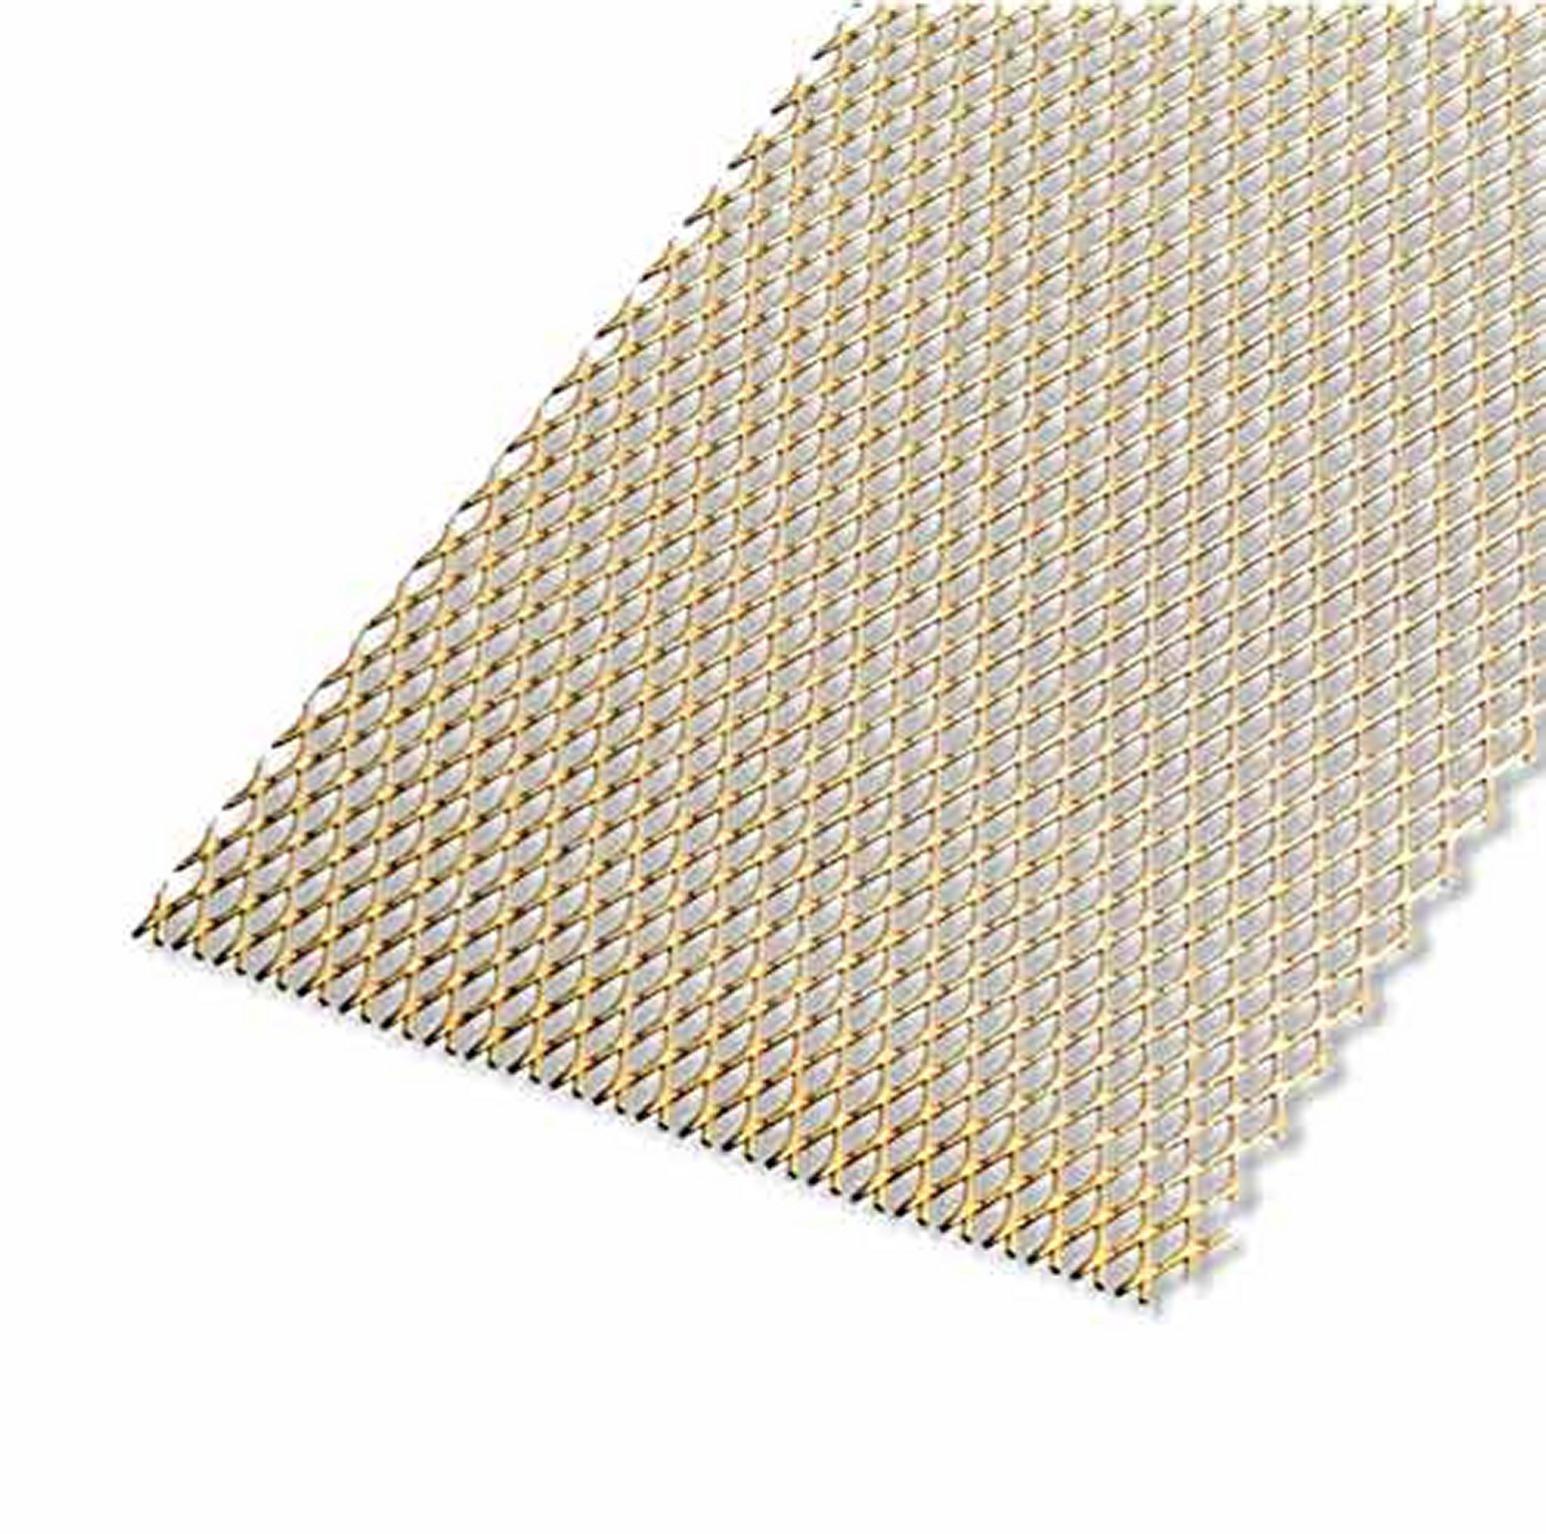 Grilles cache-radiateur 394 aluminium anodisé naturel - profil cadre  longueur 3m